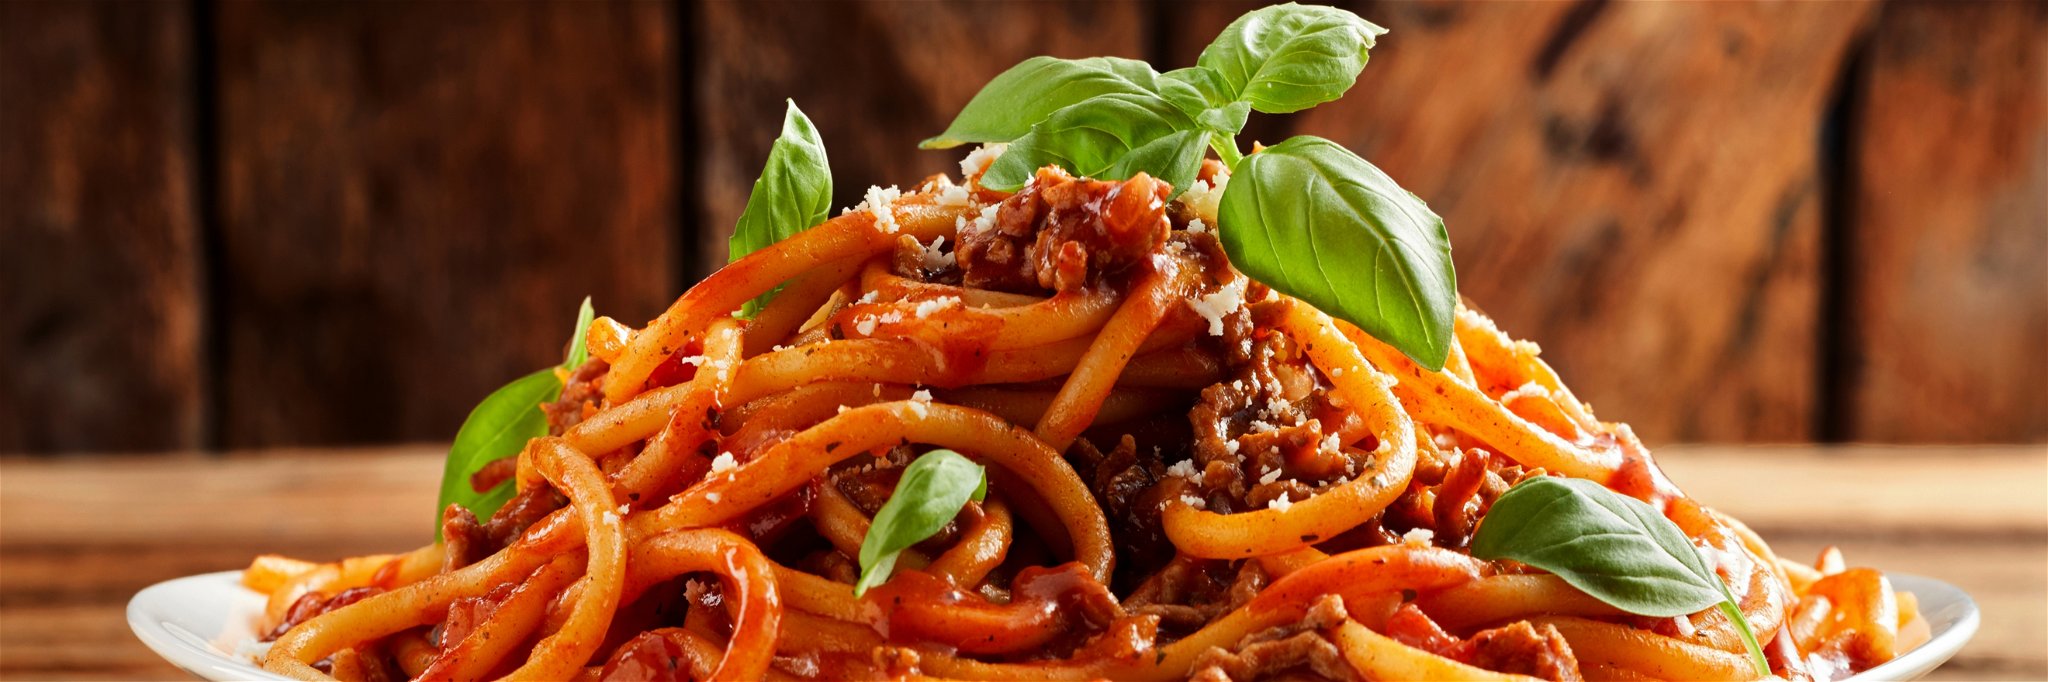 Spaghetti with ragù&nbsp;and fresh basil